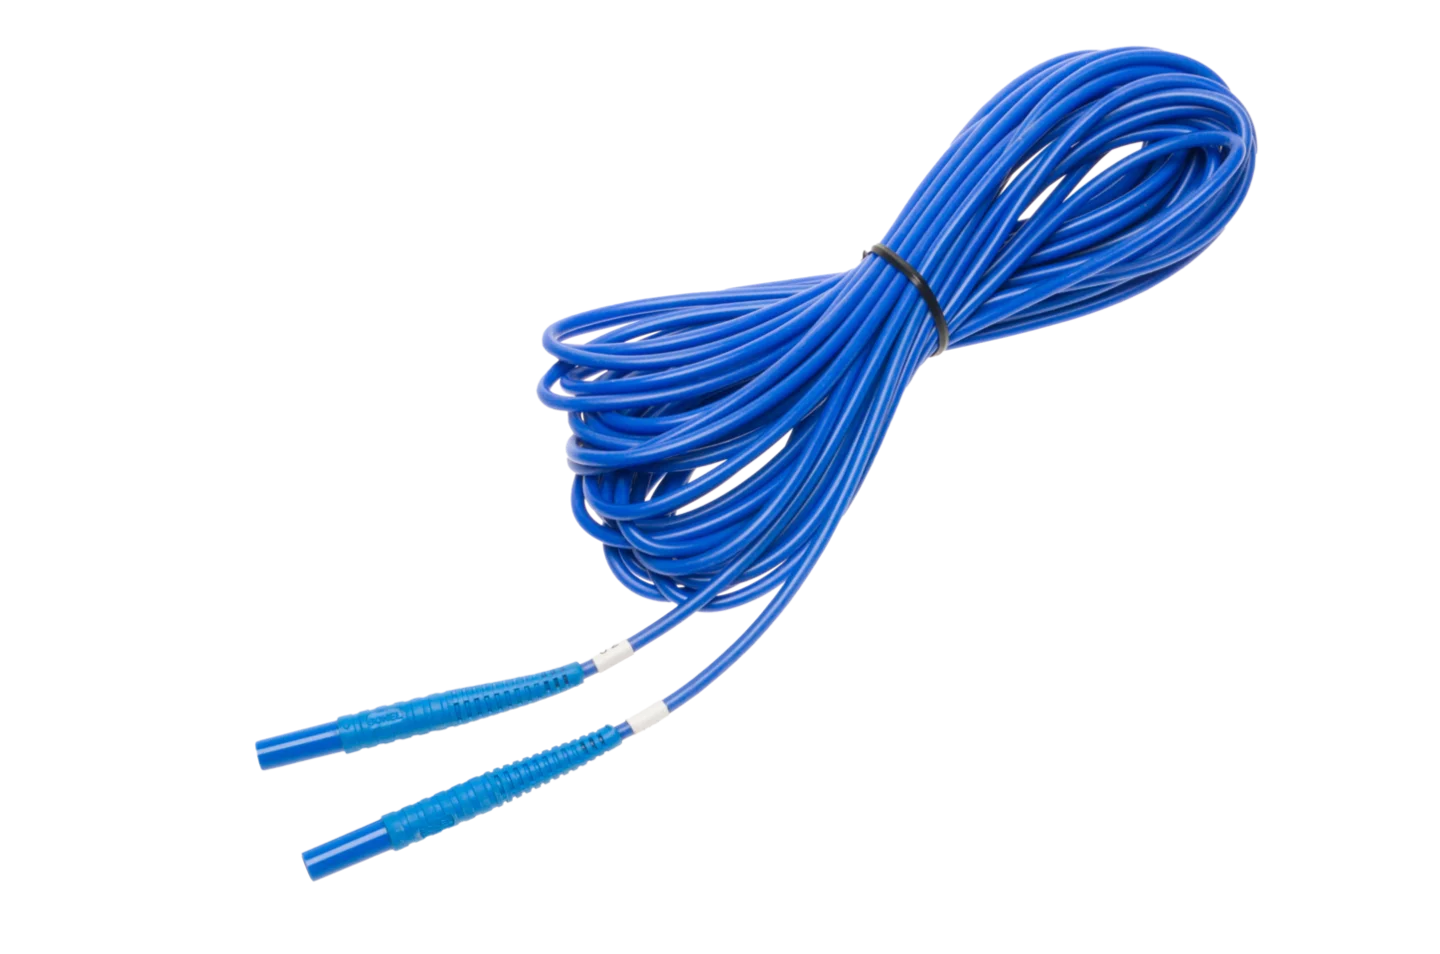 Test lead 10 m 1 kV (banana plugs) U1 blue